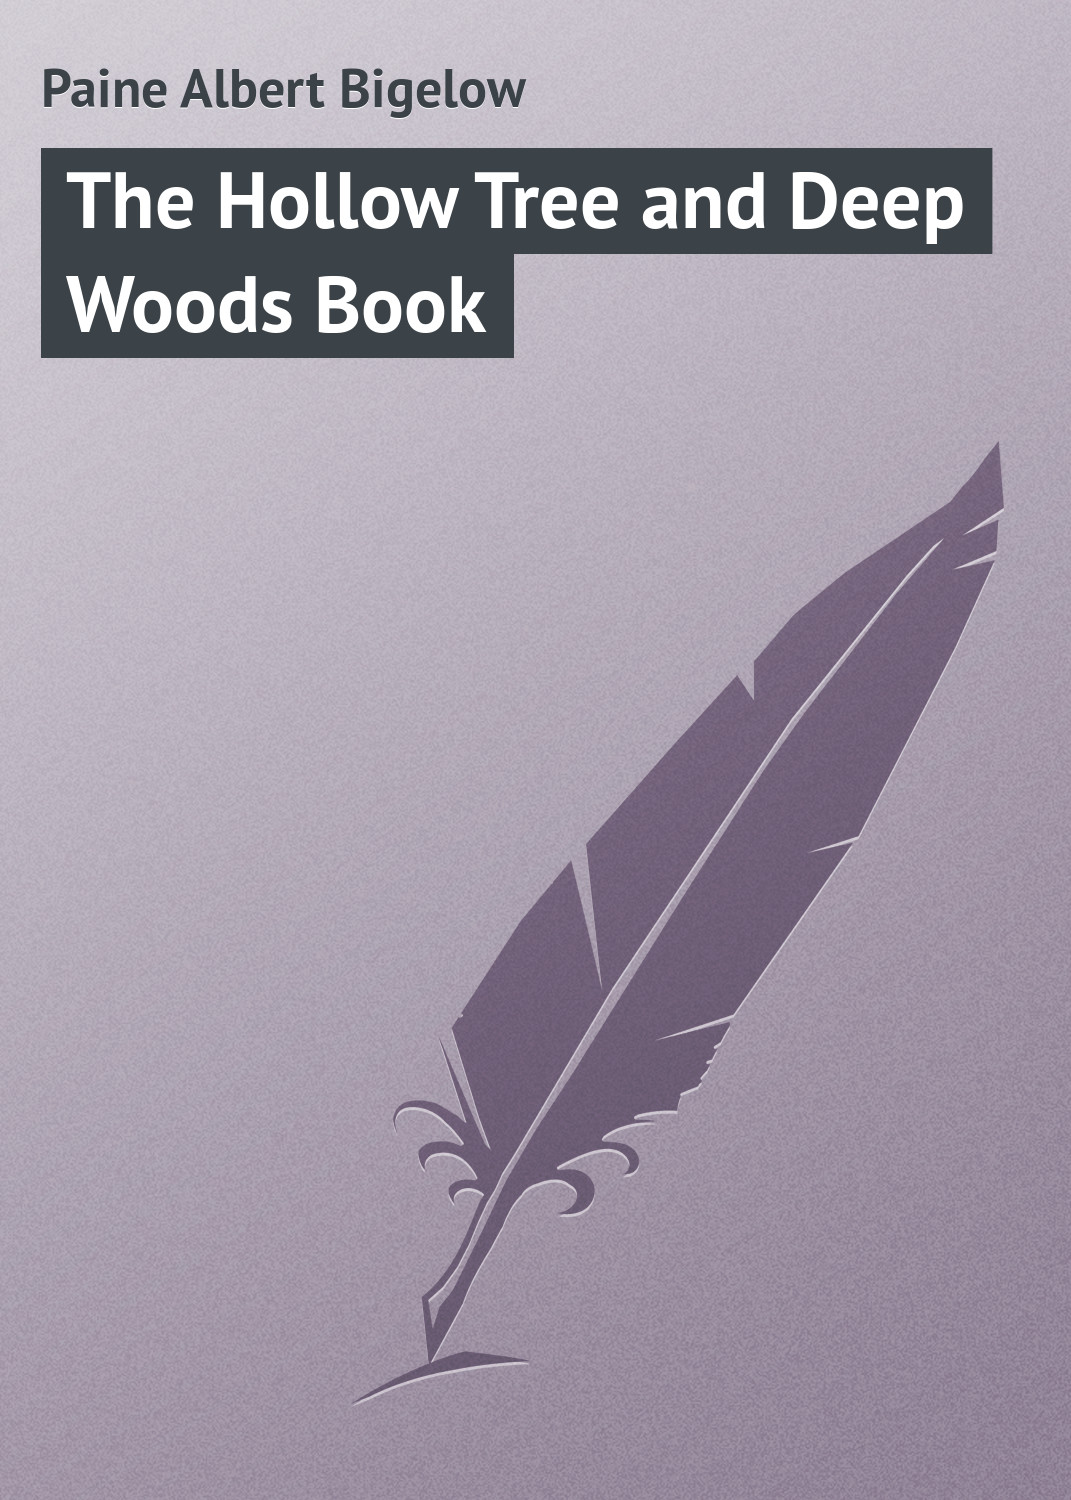 Книга The Hollow Tree and Deep Woods Book из серии , созданная Albert Paine, может относится к жанру Природа и животные, Зарубежная классика, Зарубежные детские книги. Стоимость книги The Hollow Tree and Deep Woods Book  с идентификатором 23146395 составляет 5.99 руб.